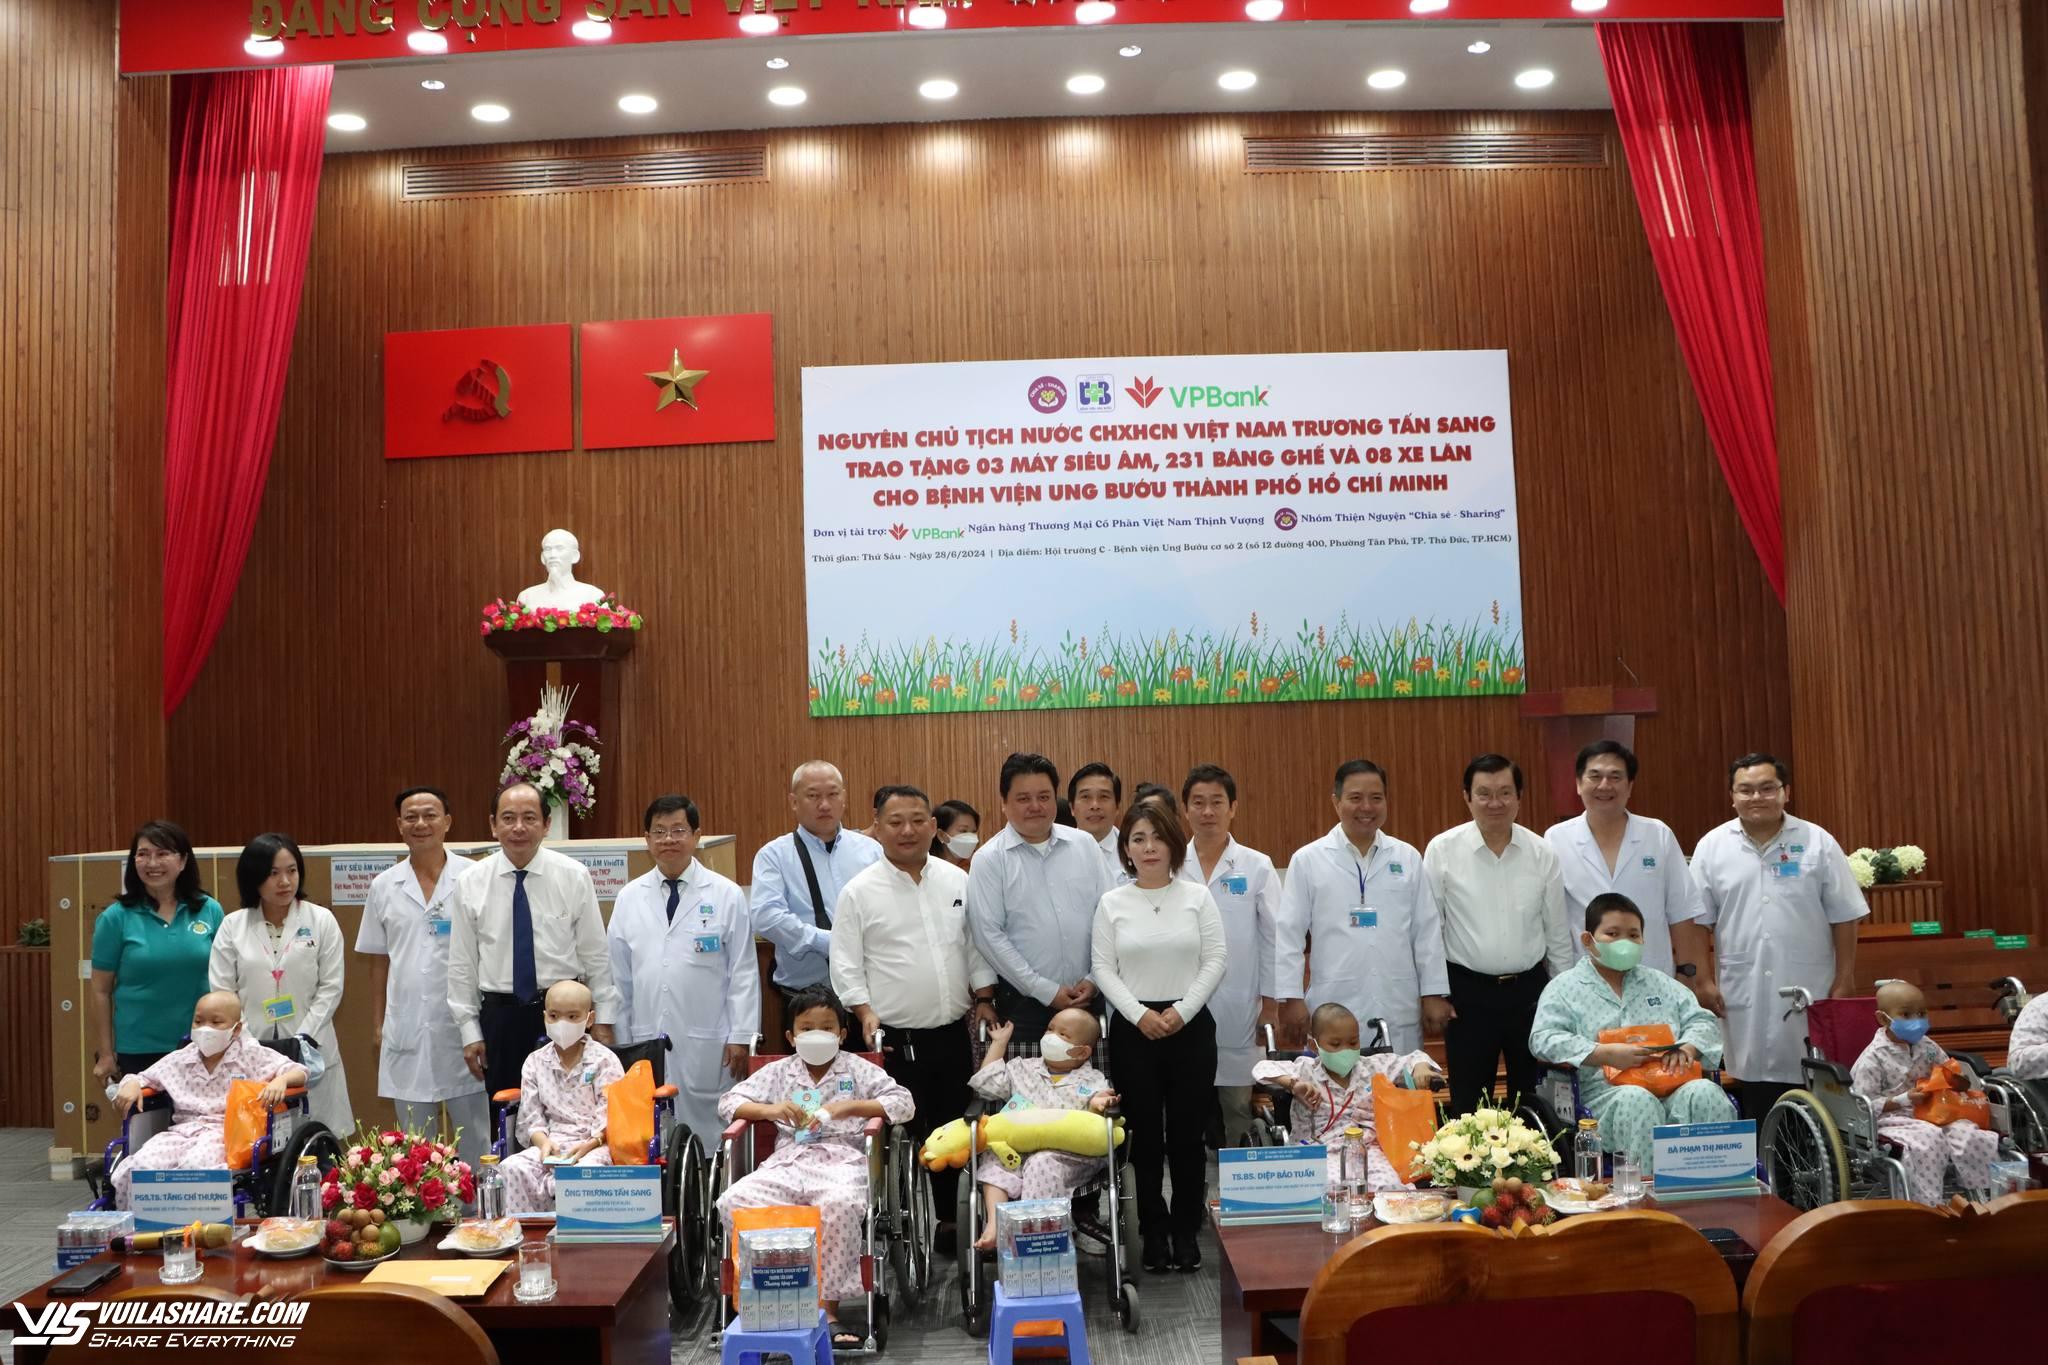 Nguyên Chủ tịch nước Trương Tấn Sang tặng Bệnh viện Ung bướu TP.HCM 3 máy siêu âm- Ảnh 2.